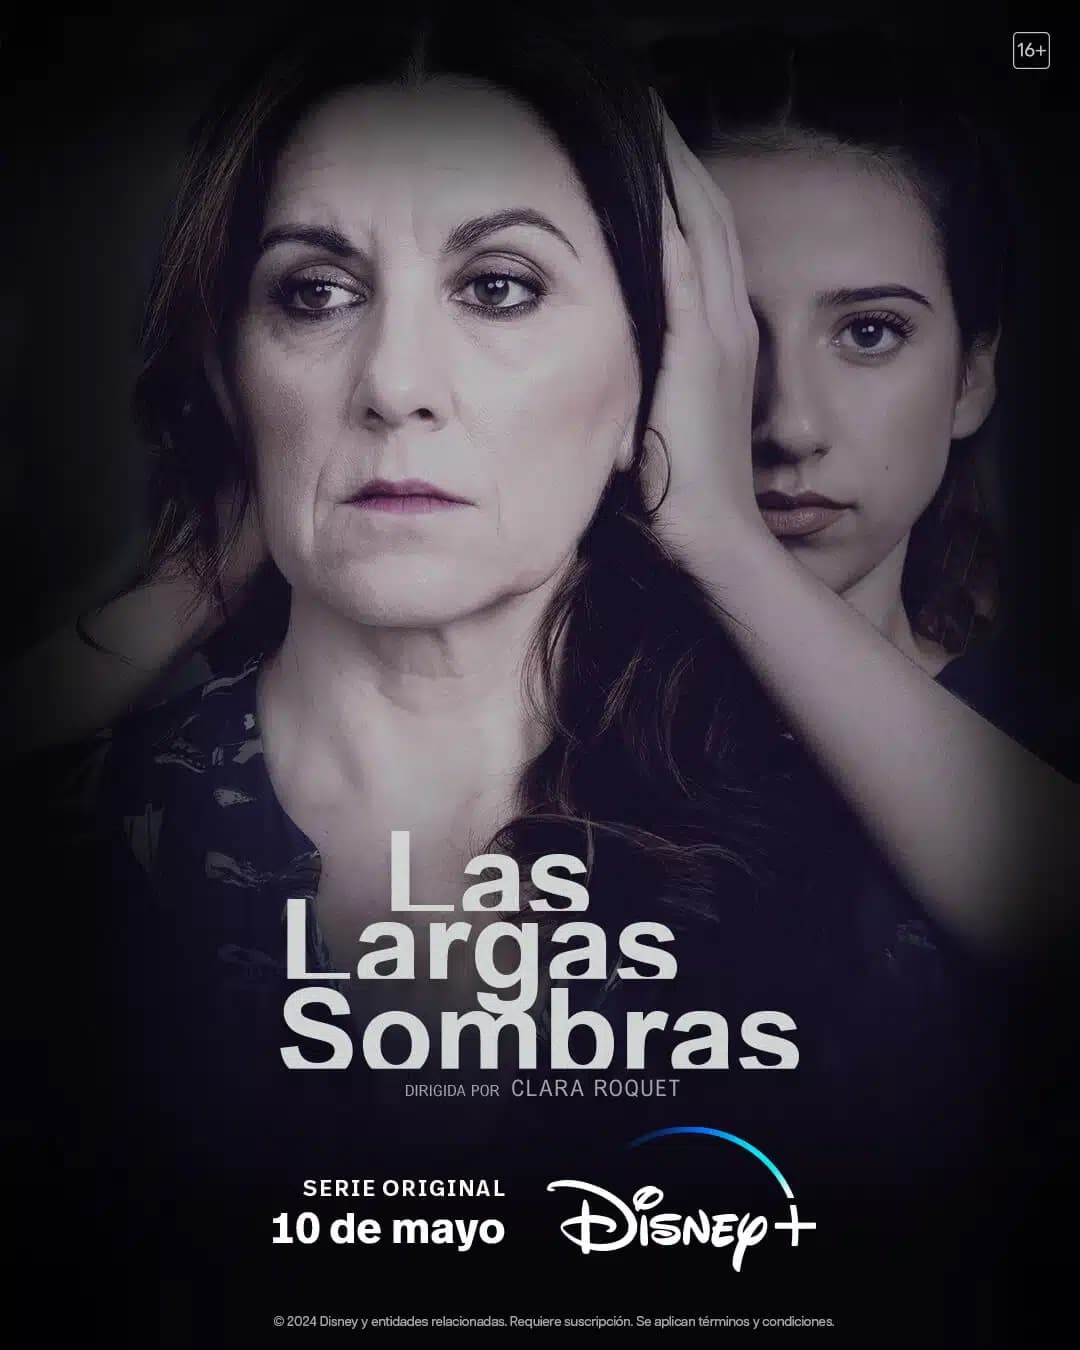 Las-Largas-Sombras-Poster-4 Las Largas Sombras: Nova série de suspense espanhola tem elenco todo feminino